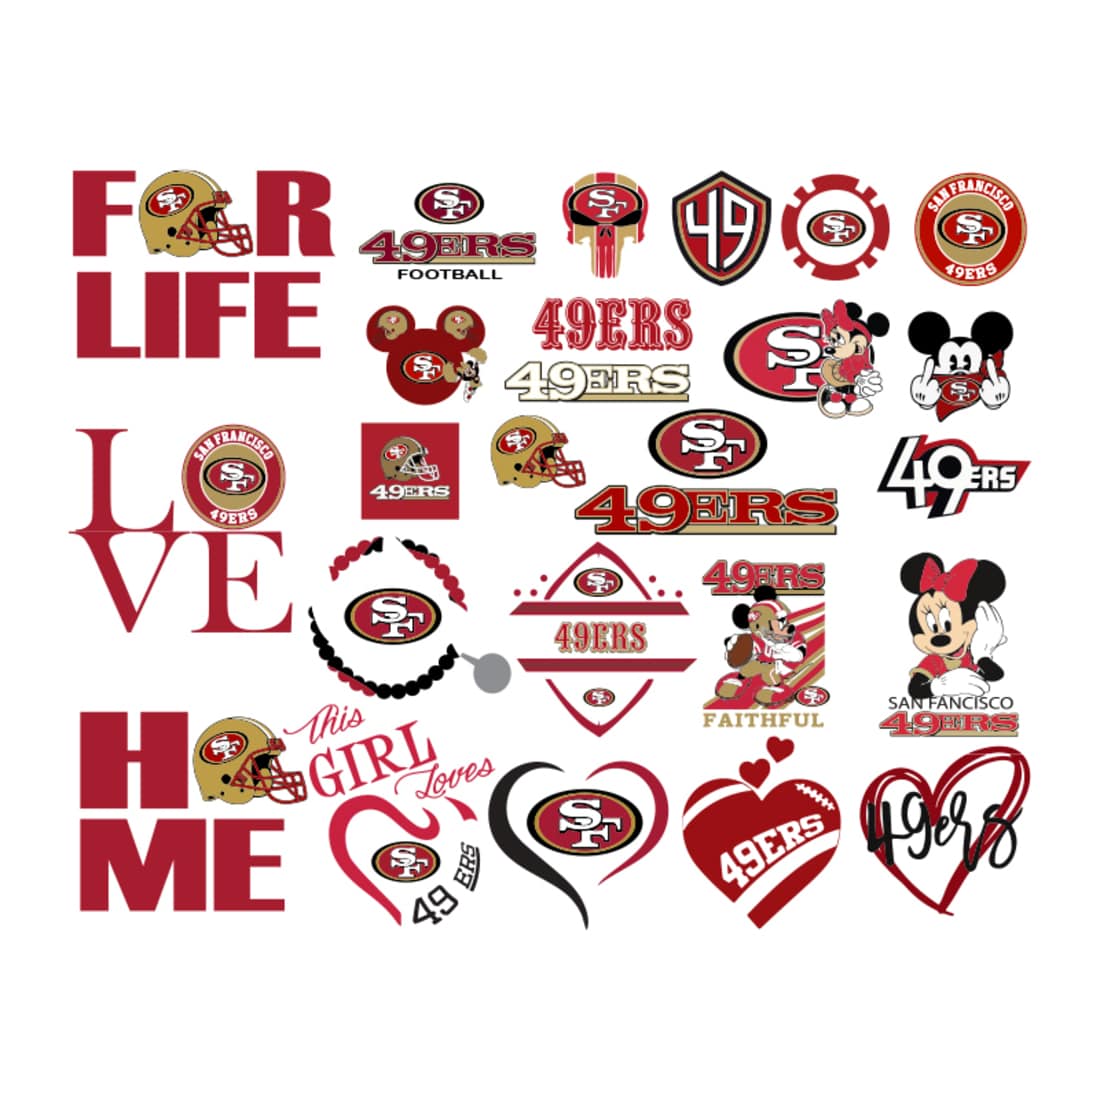 San Francisco 49ers bundle Svg, San Francisco 49ers Logo Svg, NFL football Svg, Sport logo Svg, Football logo Svg, Digital download cover image.